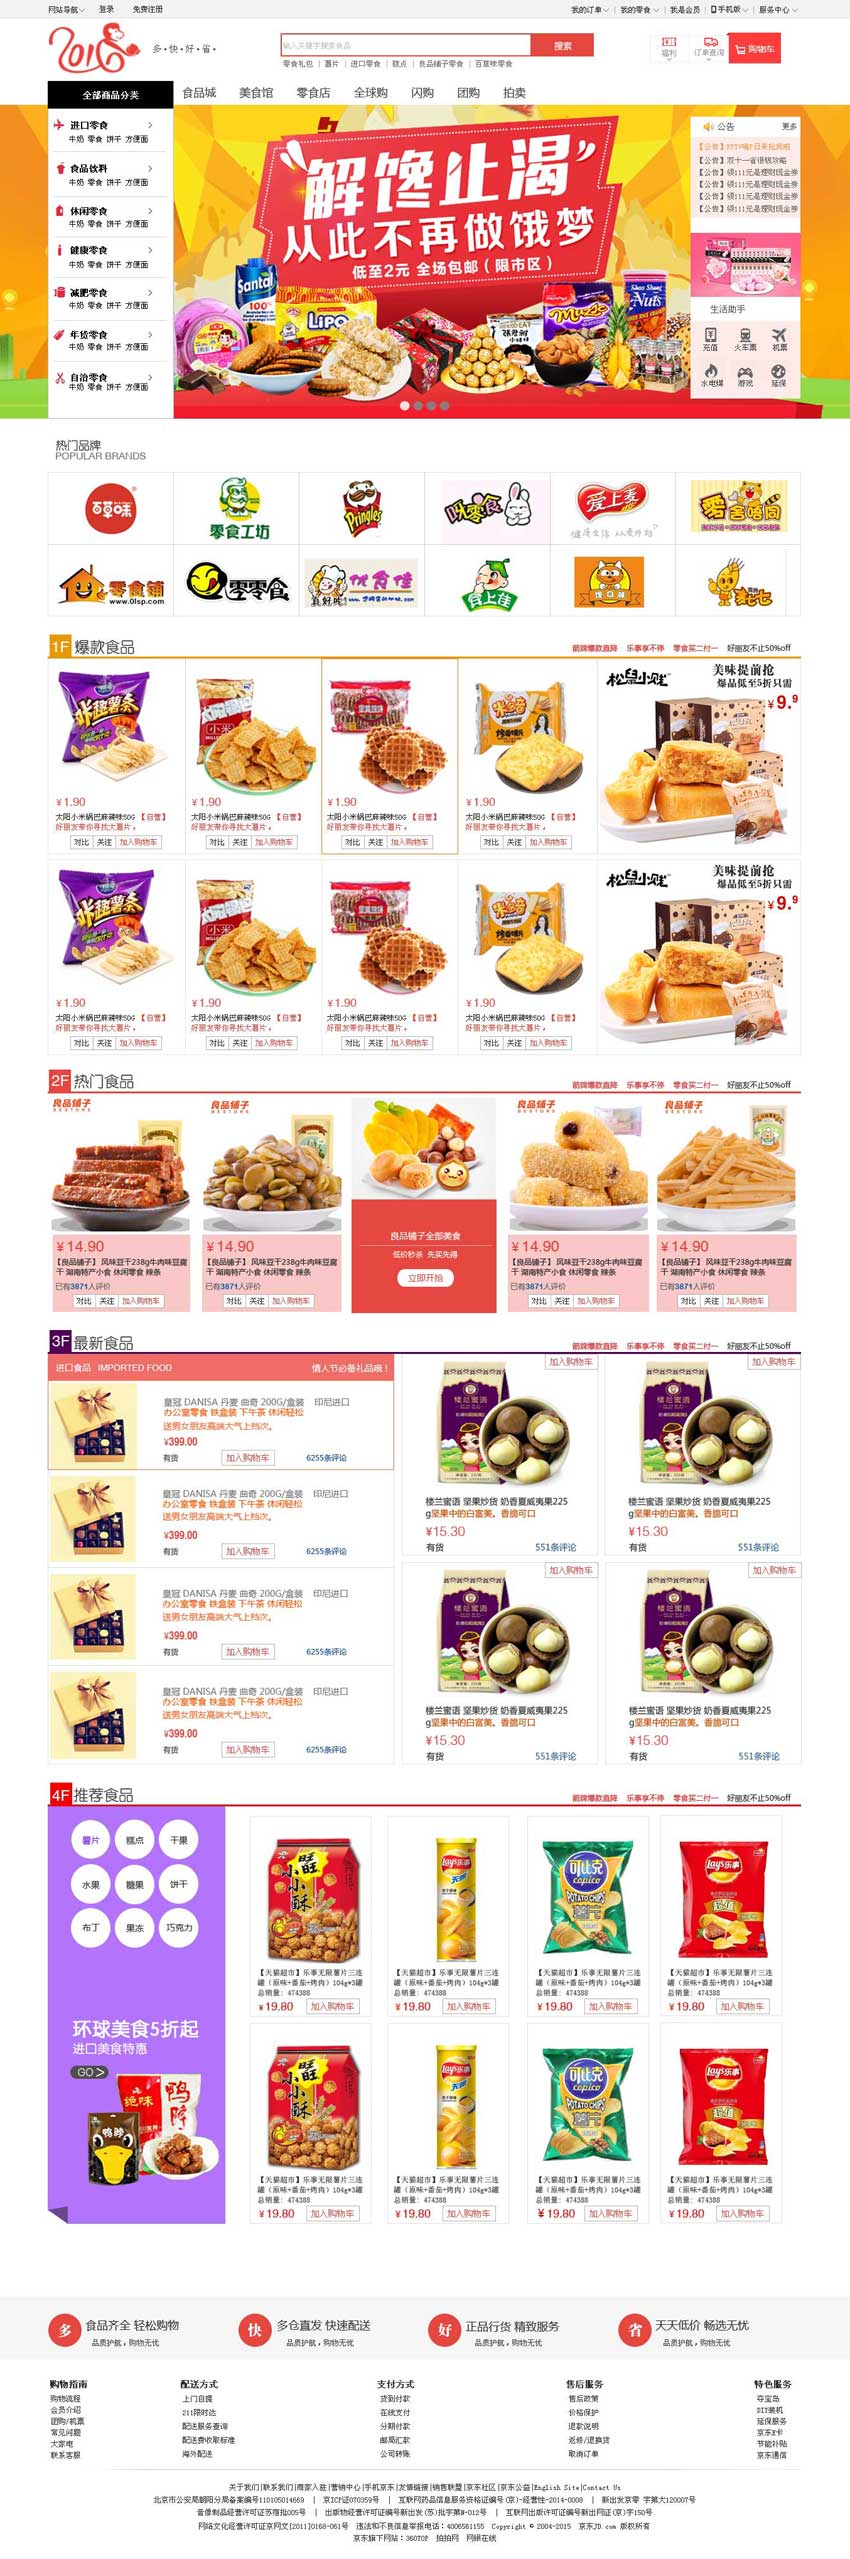 网上食品购物商城首页设计模板_商城网站模板